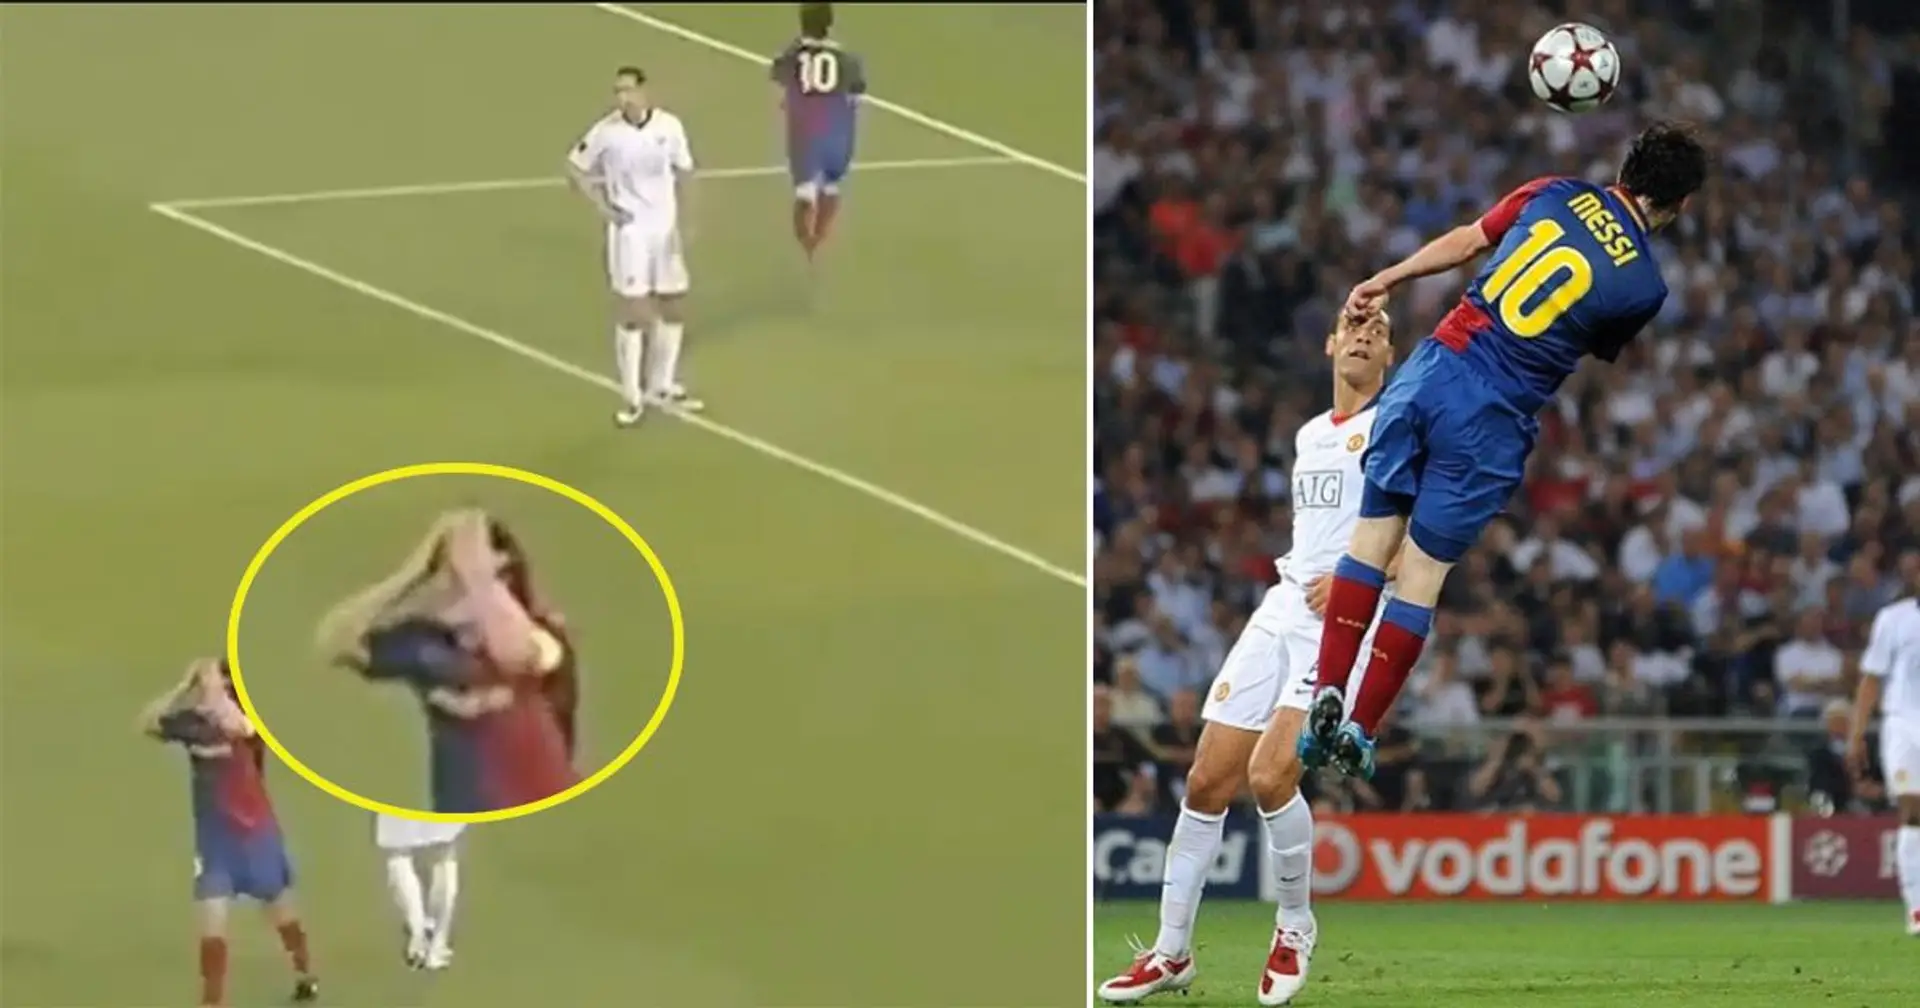 La réaction surprenante de Carles Puyol alors que Leo Messi marquait de la tête en finale de la Ligue des champions